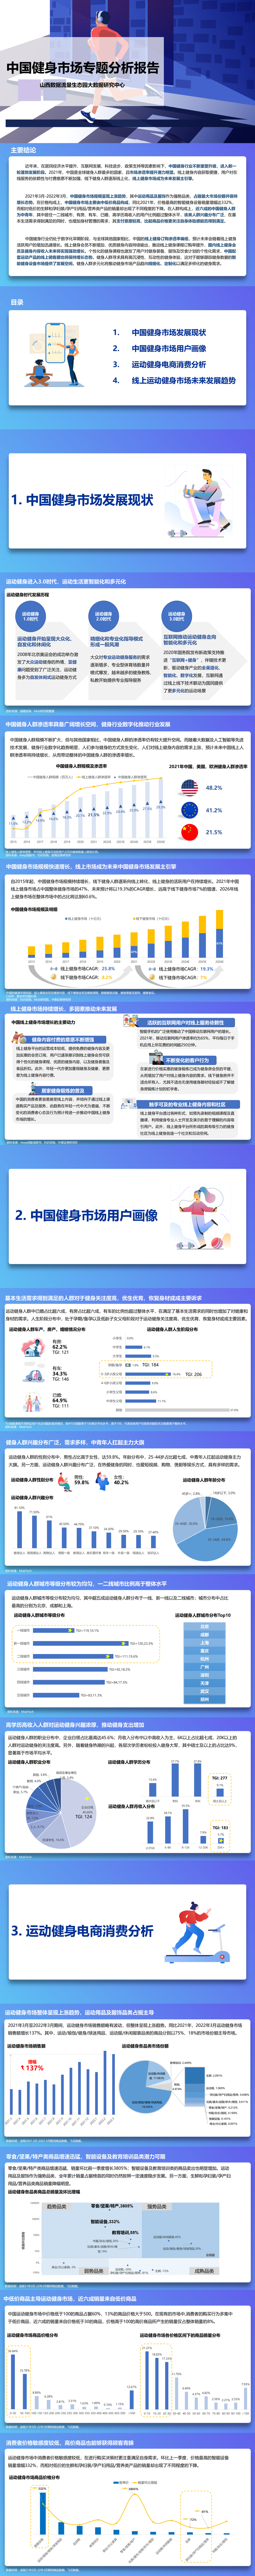 数字报告|生态园大数据研究中心发布《中国健身市场专题分析报告》(图1)